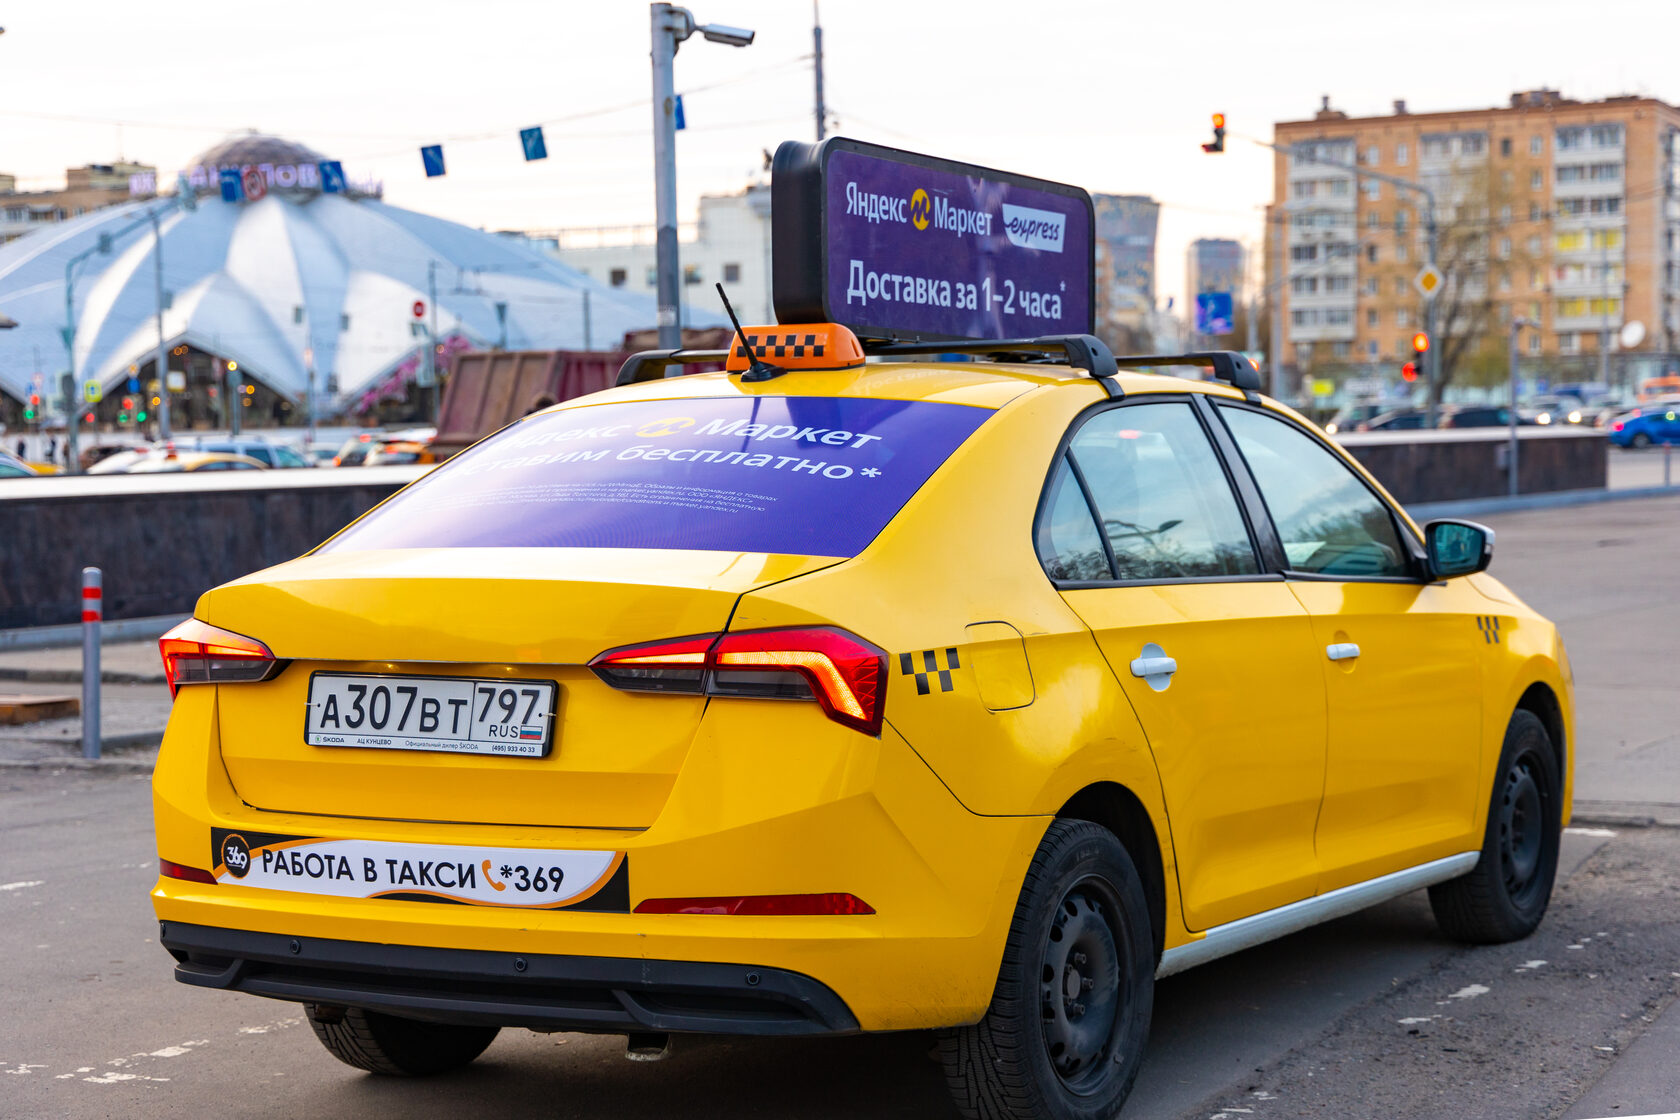 Лизинг авто под такси. Реклама такси на авто. Реклама такси.